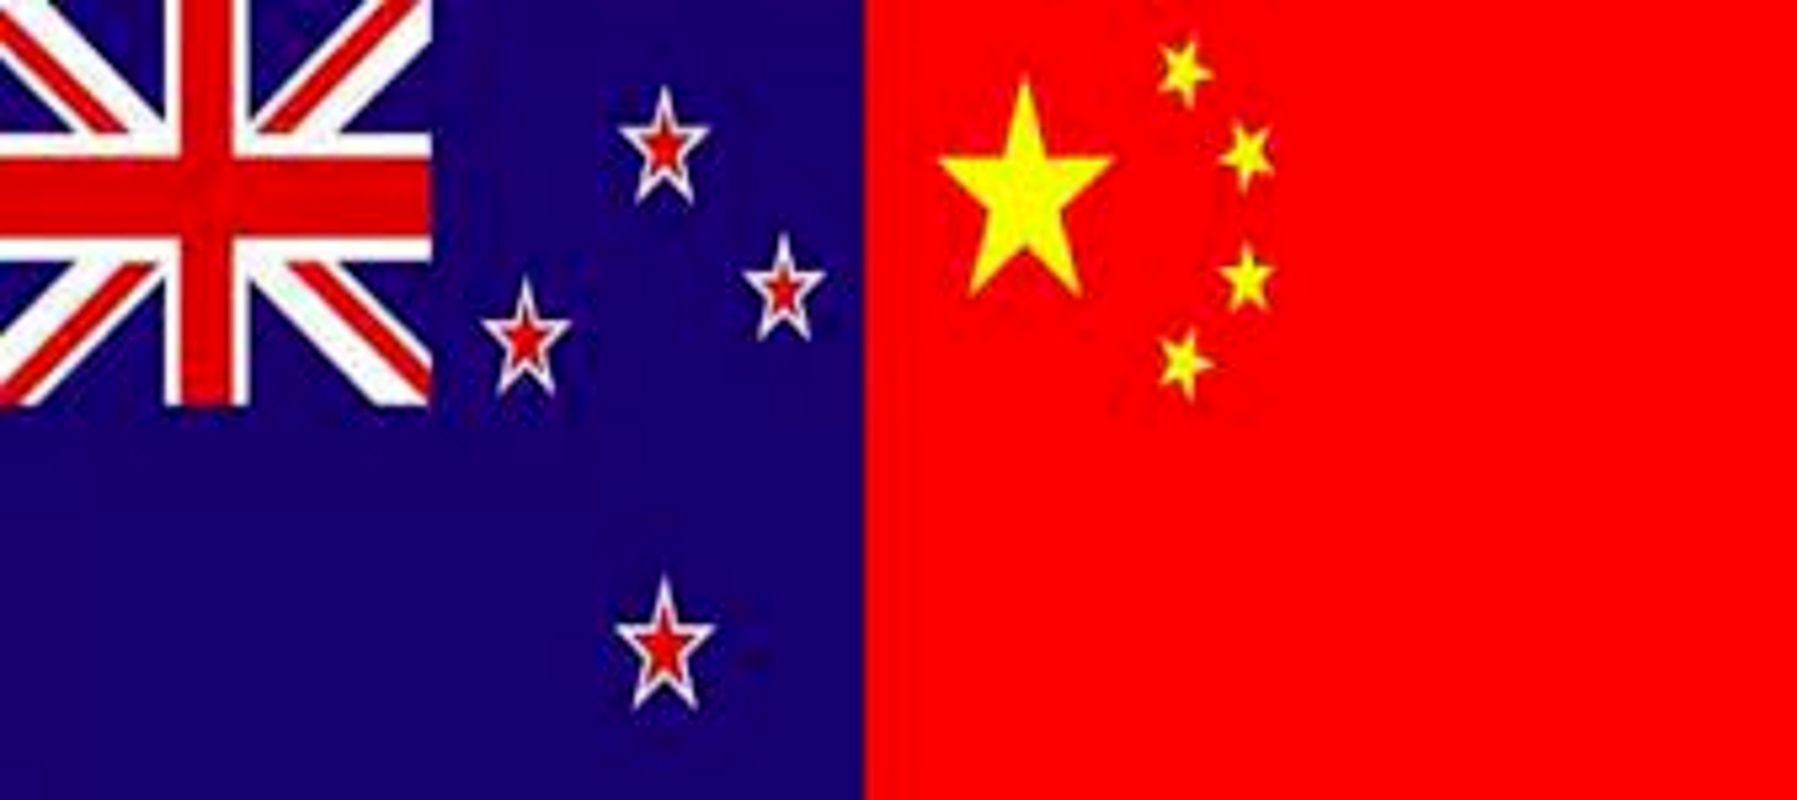 اتهام سنگین نیوزیلند به چین